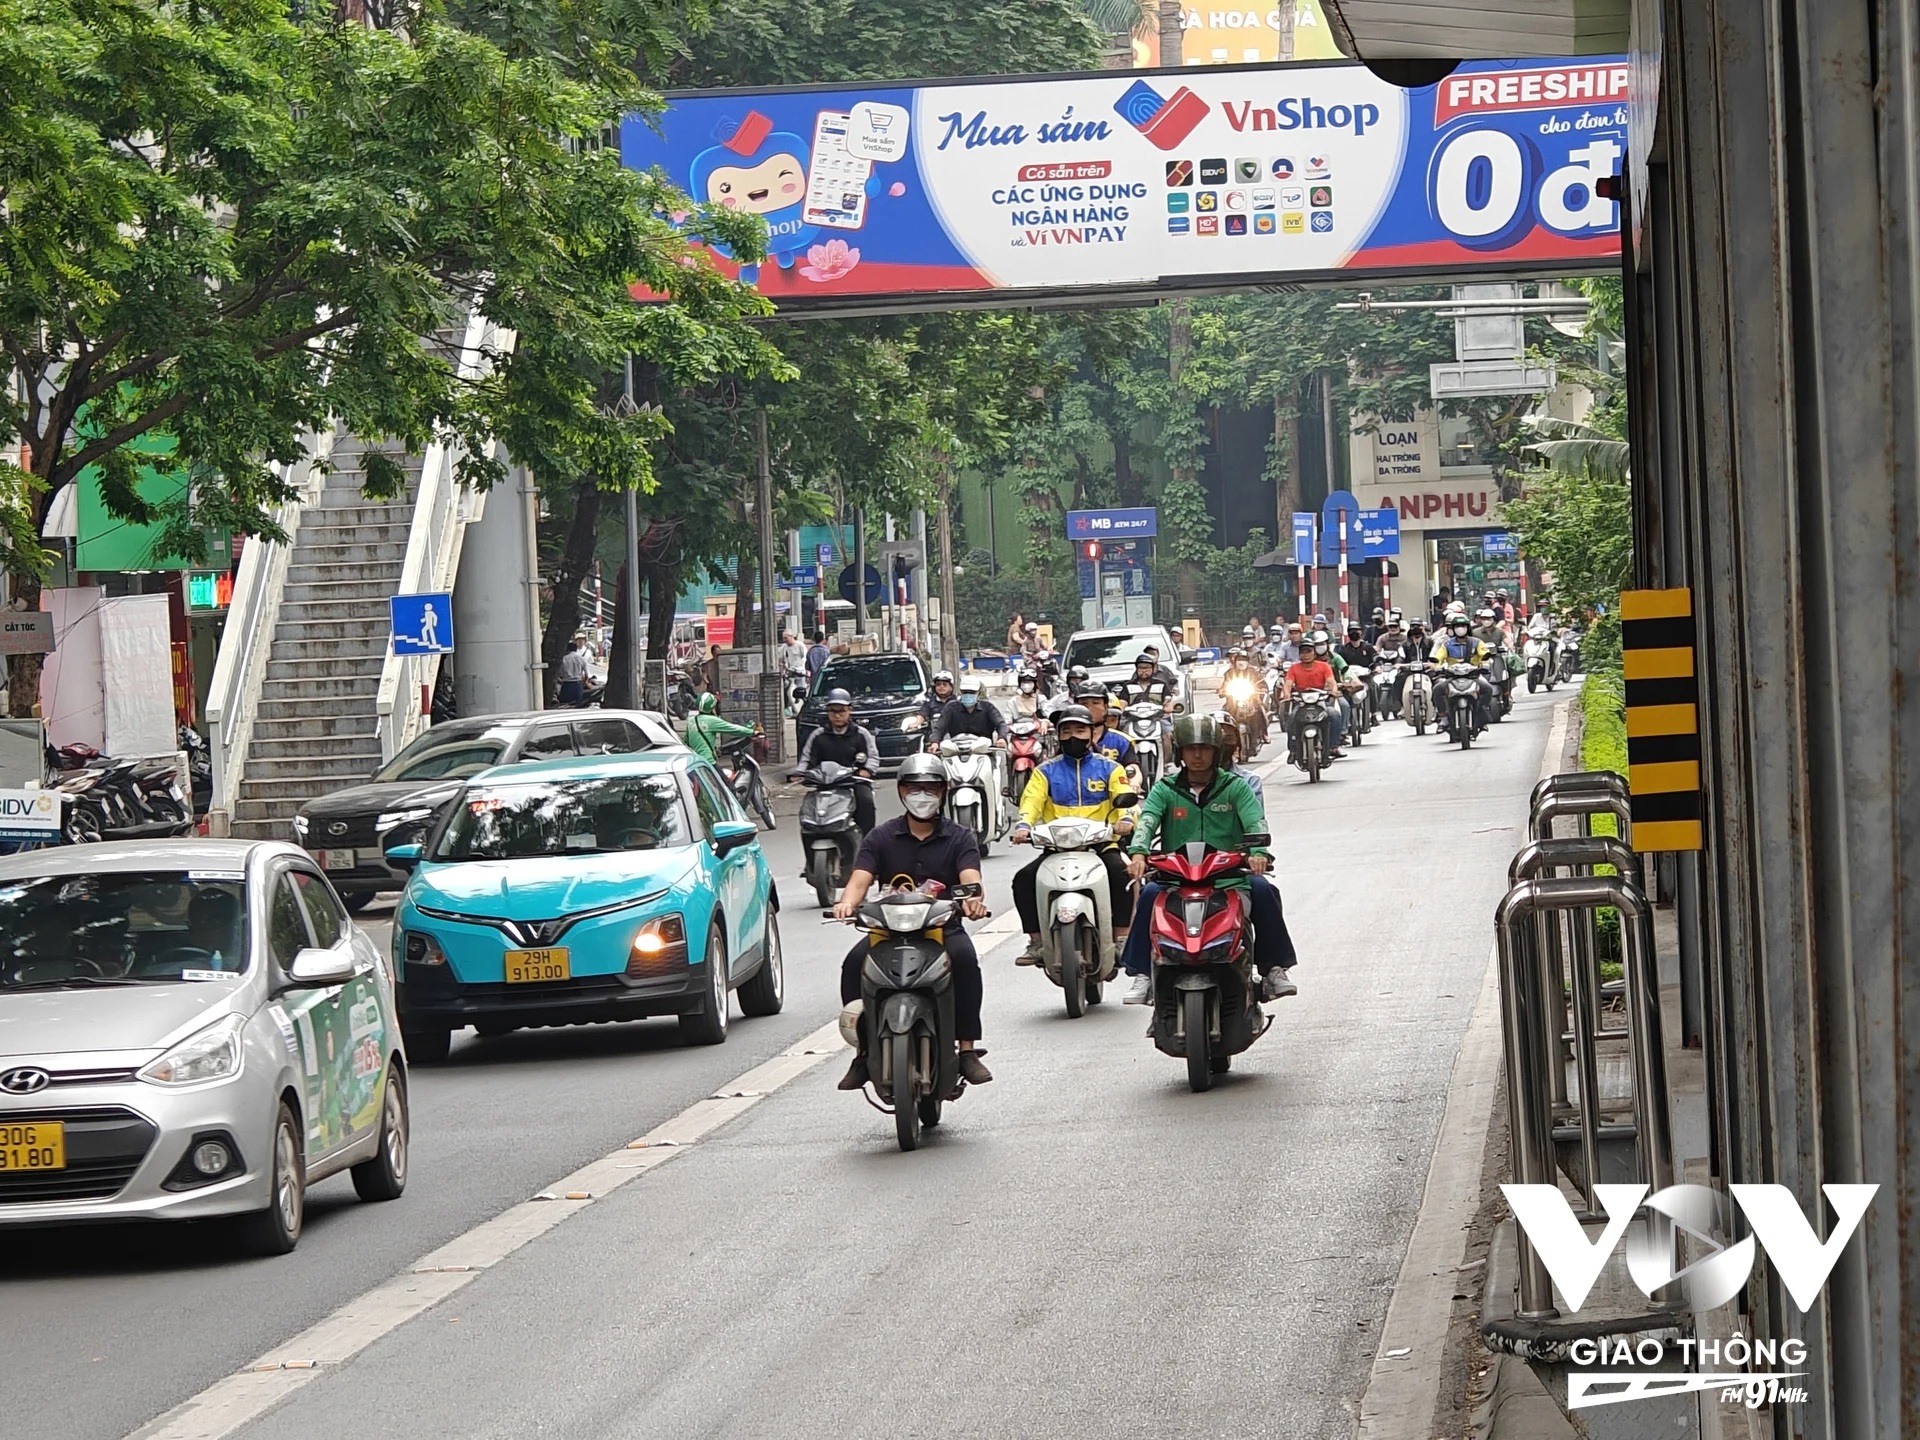 Hình ảnh các tài xế xe ôm công nghệ vi phạm luật giao thông đường bộ vẫn khá phổ biến trên đường phố Hà Nội. Ảnh: Chu Đức